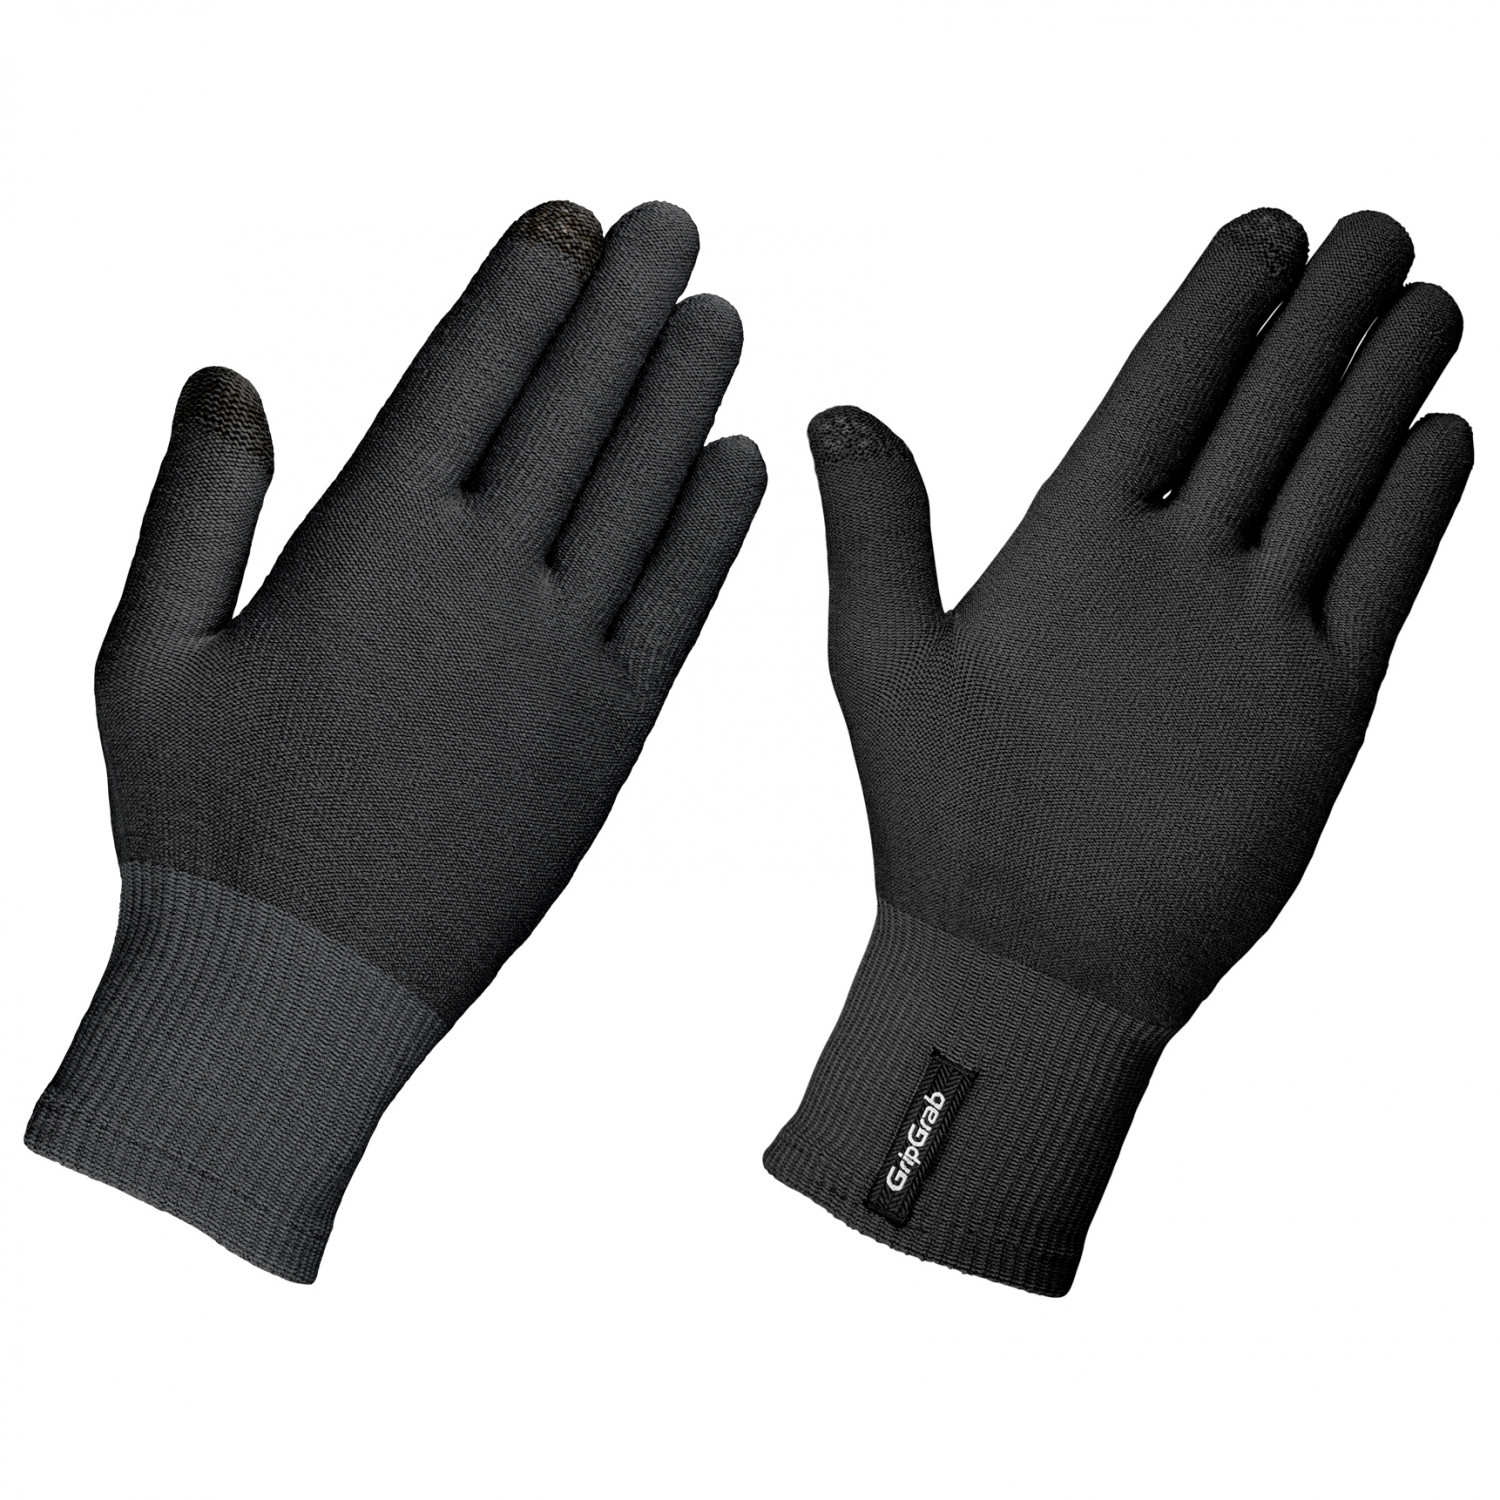 Перчатки Gripgrab Merino Liner, черный перчатки для мойки автомобиля мягкая двусторонняя утолщенная флисовая ткань из микрофибры и синели ткань для сушки стеклянная перчатка д